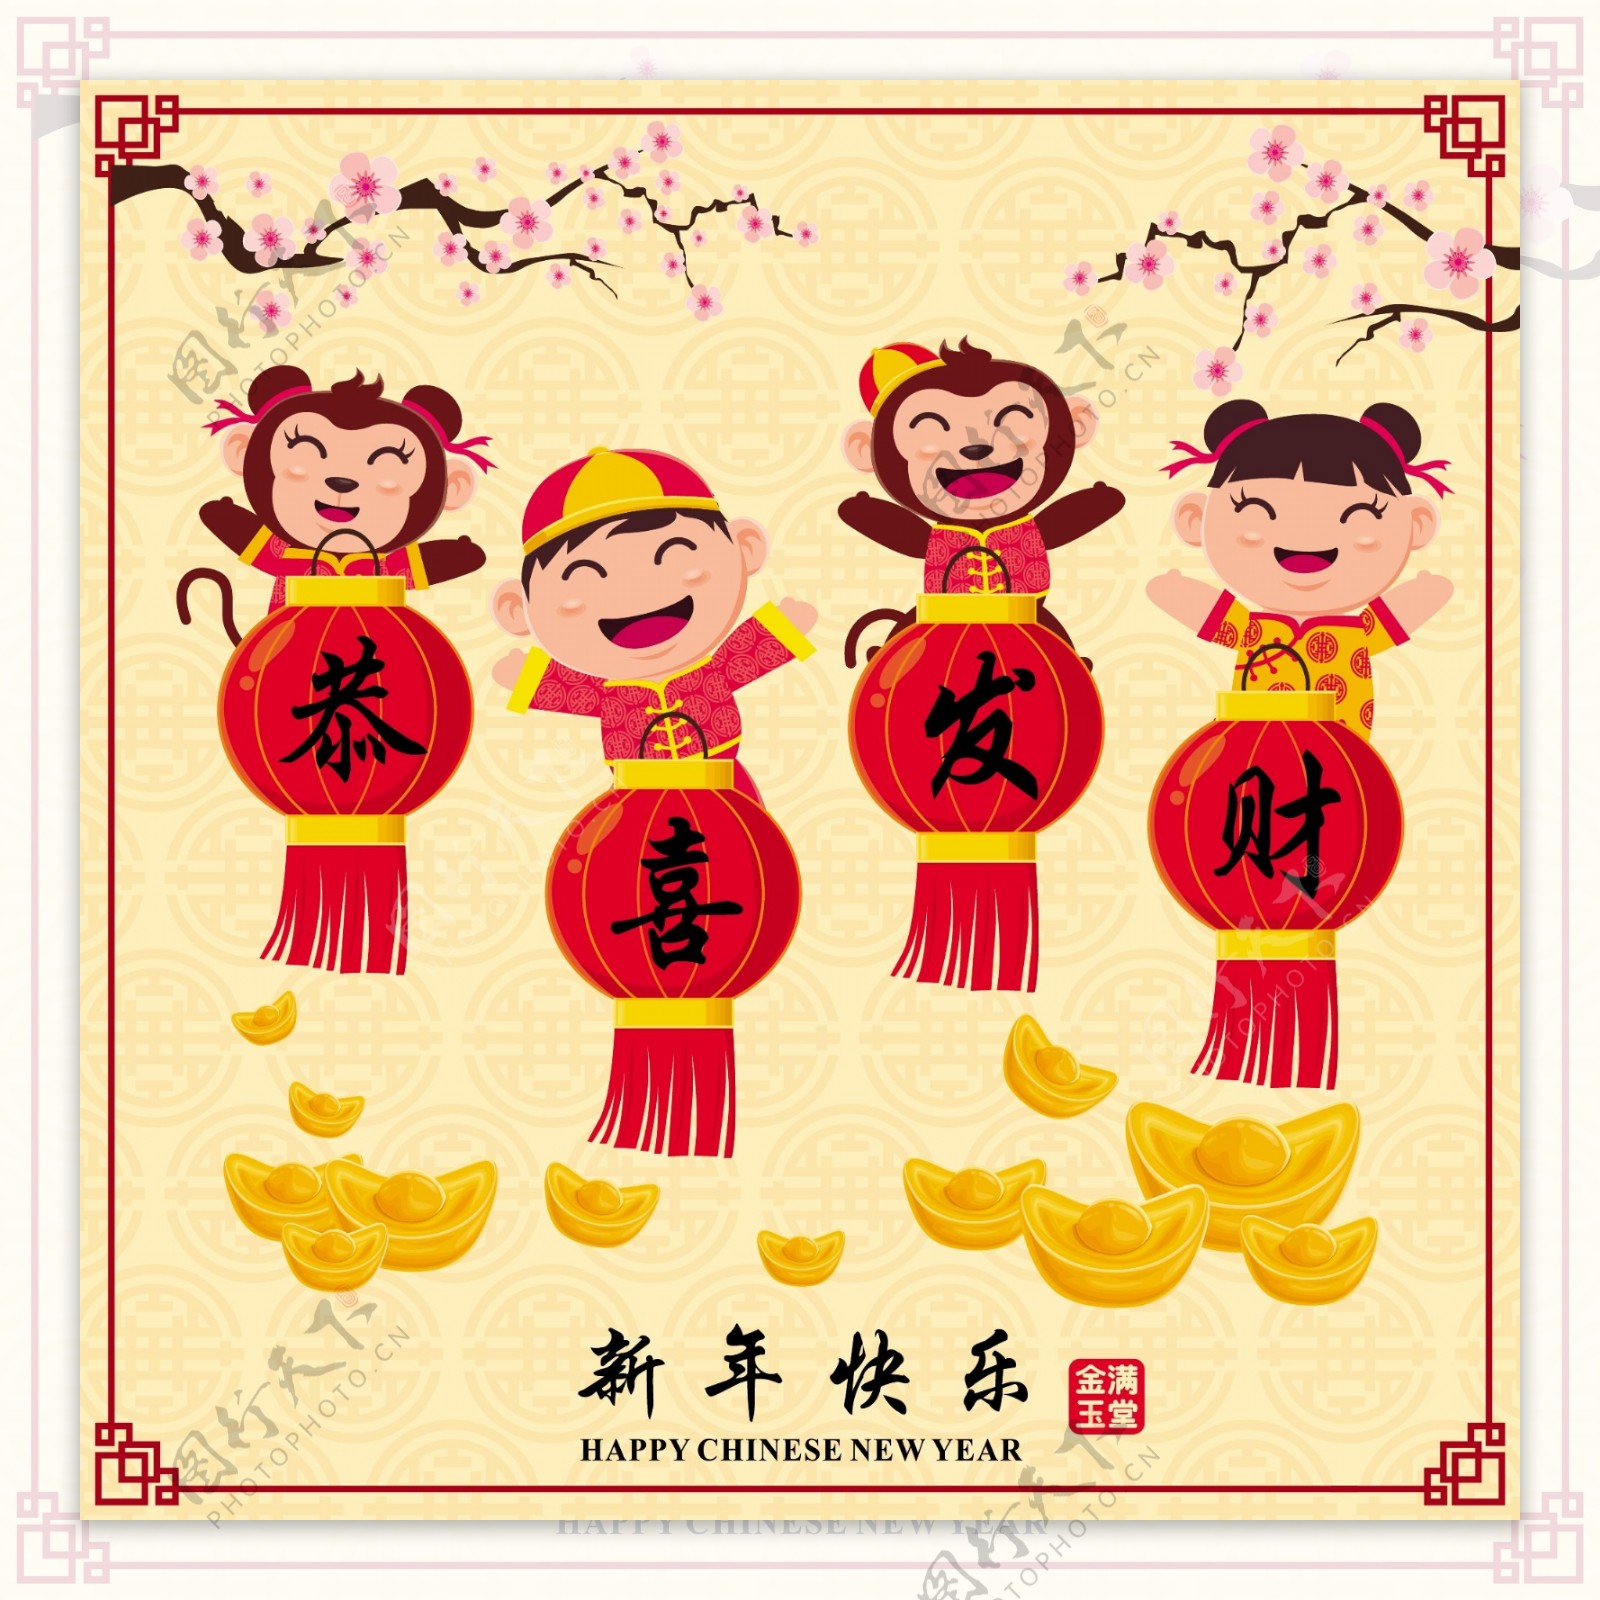 中国传统新年桃花春节矢量素材